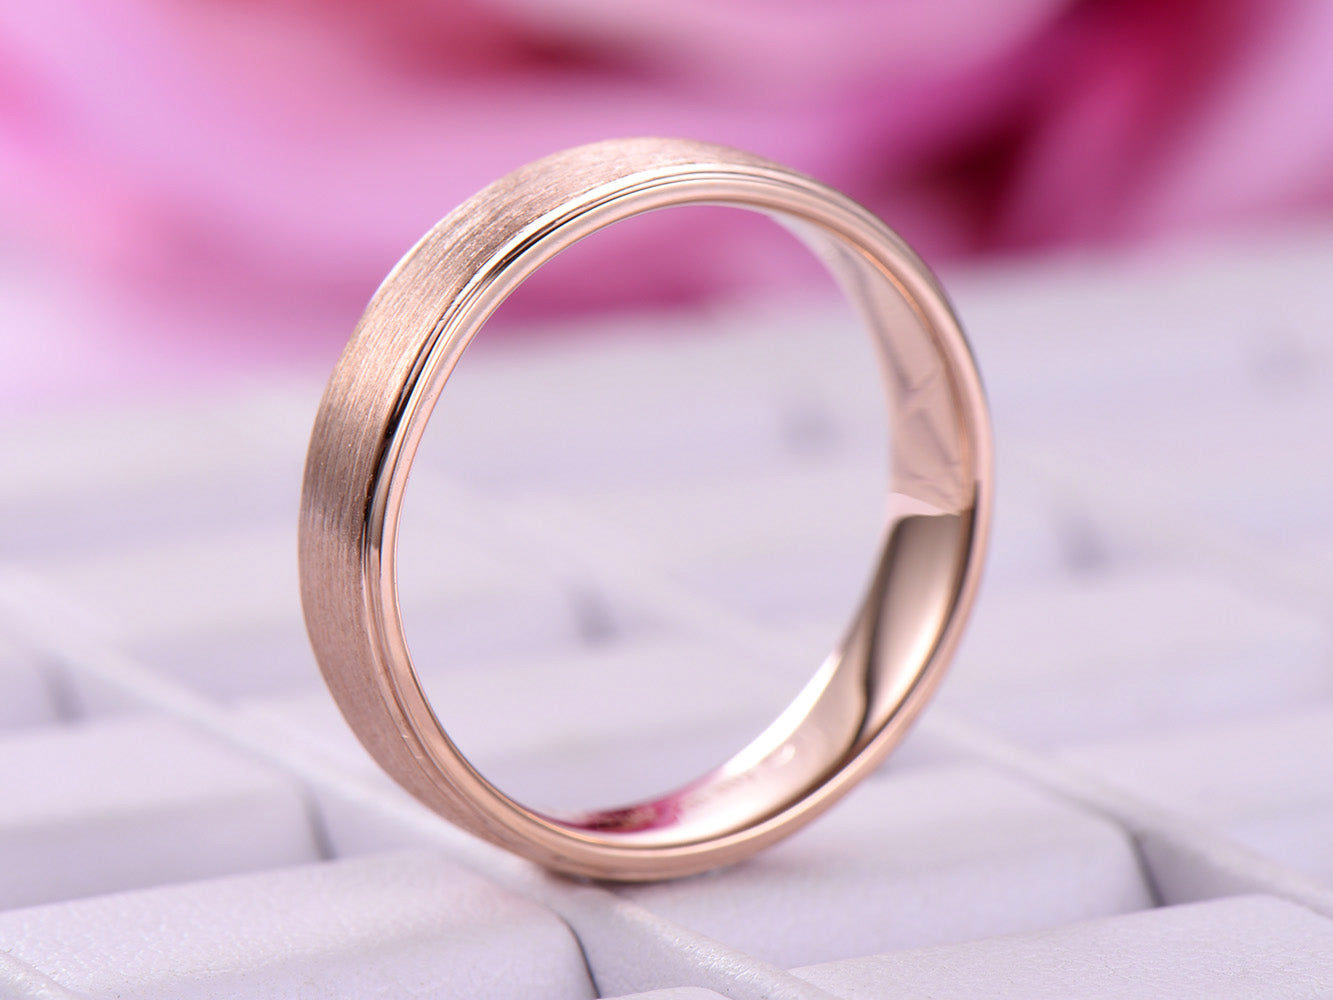 Reserved for Luke: Satin Finish Men's Wedding Ring Plain 18K Rose Gold